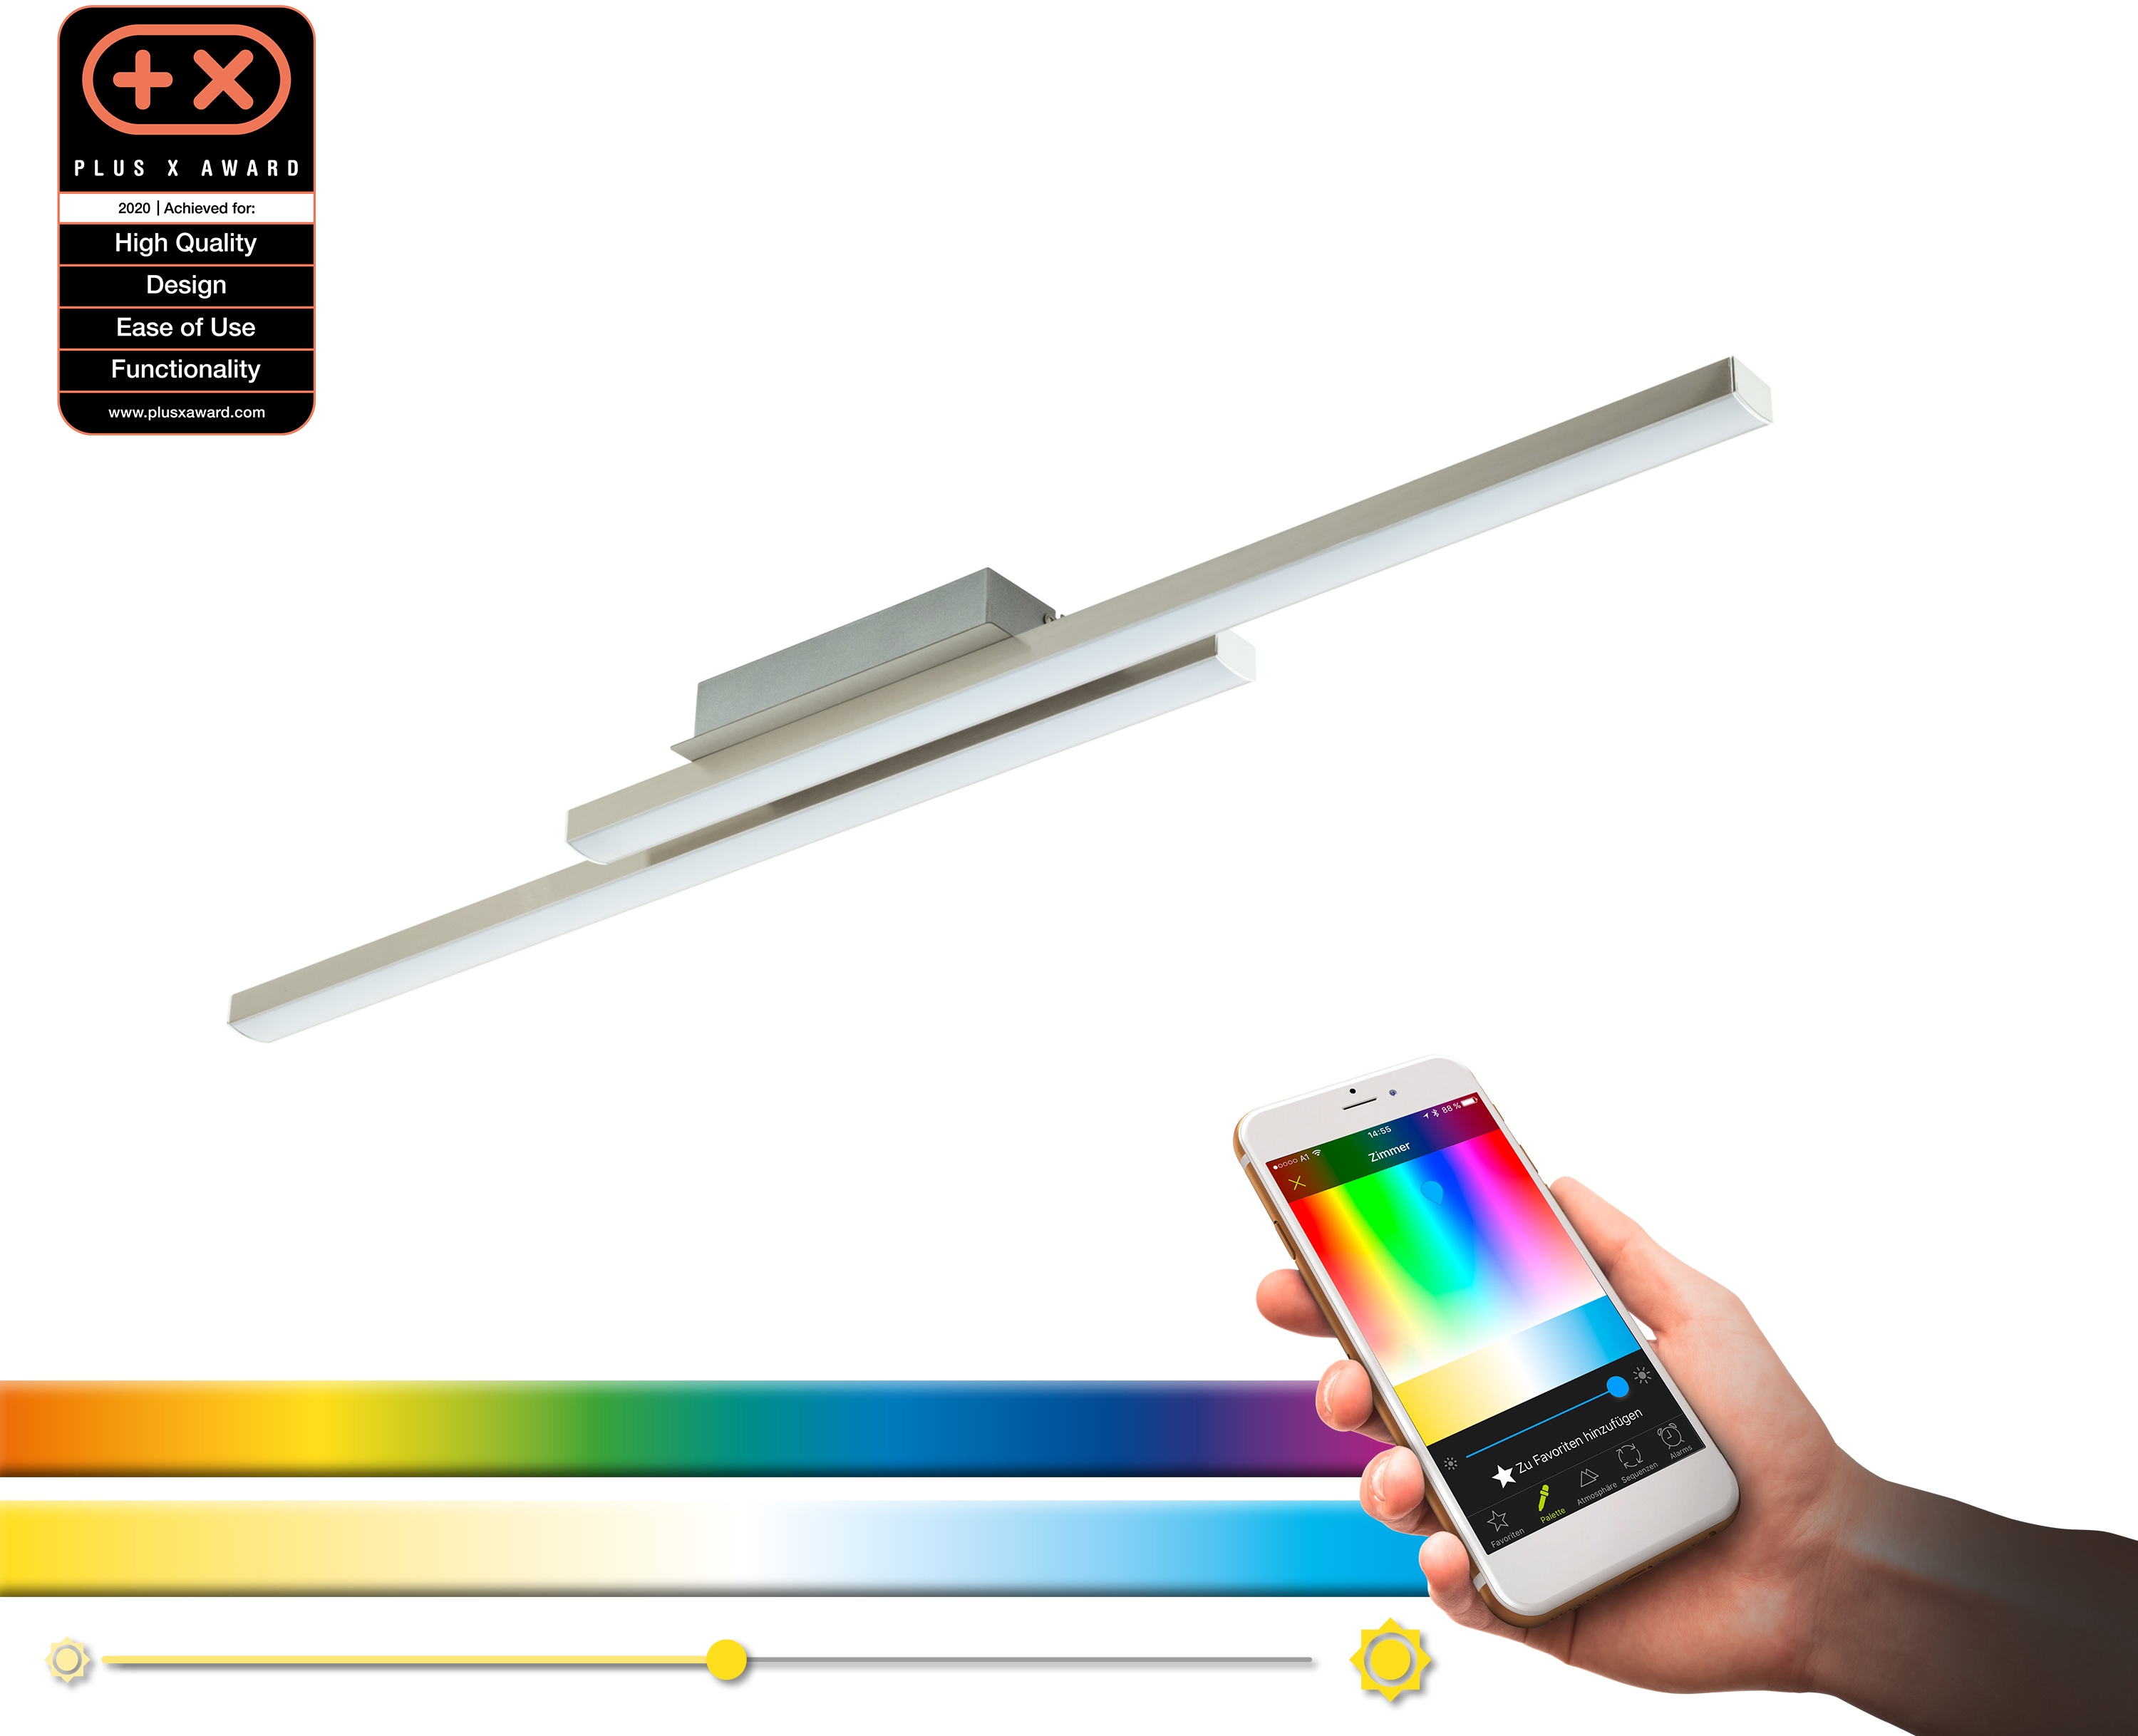 EGLO Deckenleuchte FRAIOLI-C, LED-Board, nickel matt / L105,5 x H6,5 x B12 cm / inkl. 2 x LED-Platine (je 17W, 2300lm, 2700-6500K) / Eglo Connect - App - CCT Farbtemperatursteuerung - dimmbar - RGB Farbwechsel - Fernbedienung - Deckenlampe